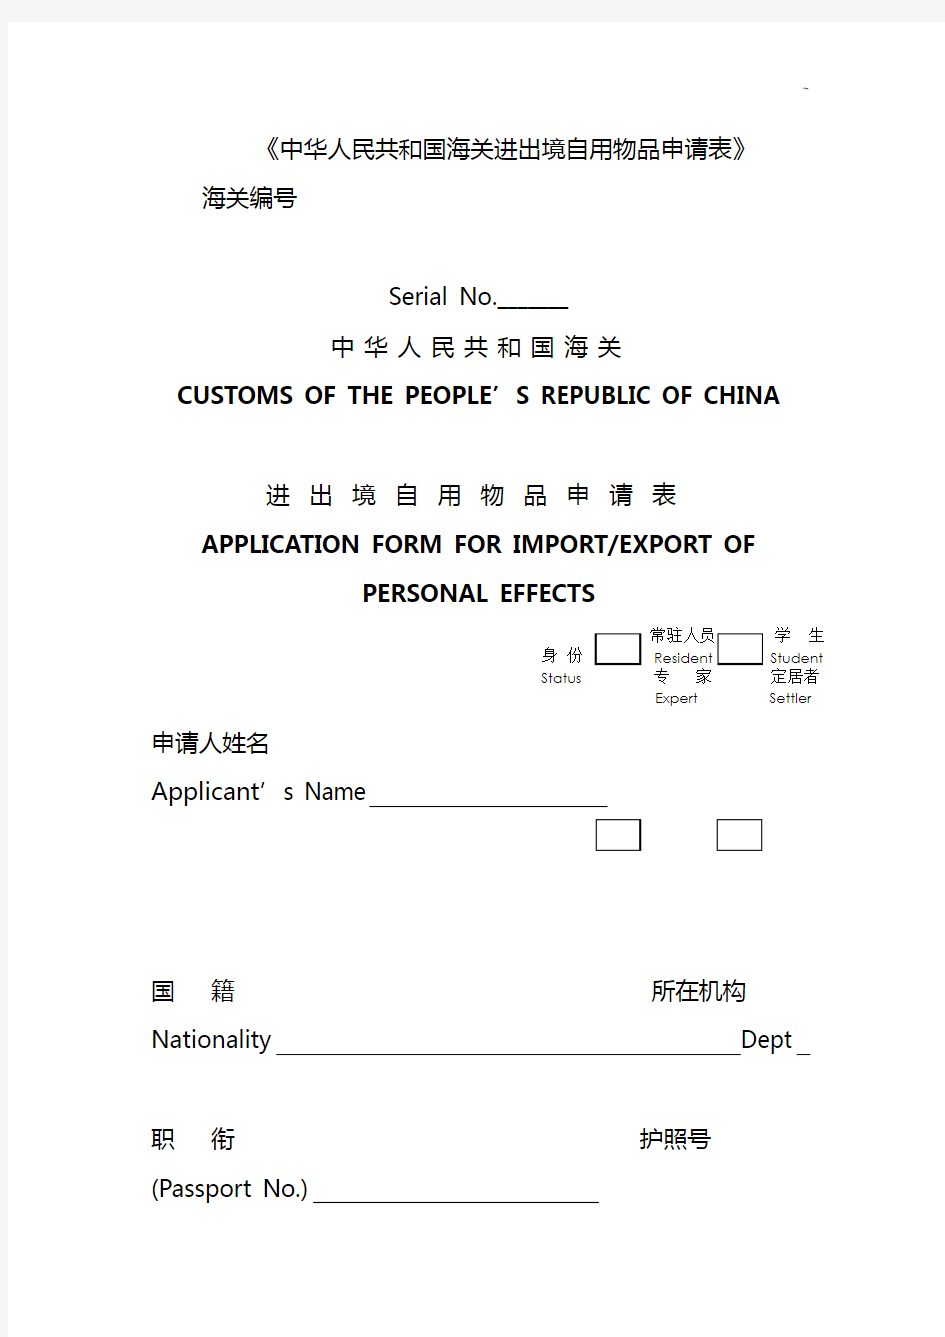 《中国海关进出境自用物品申请表》